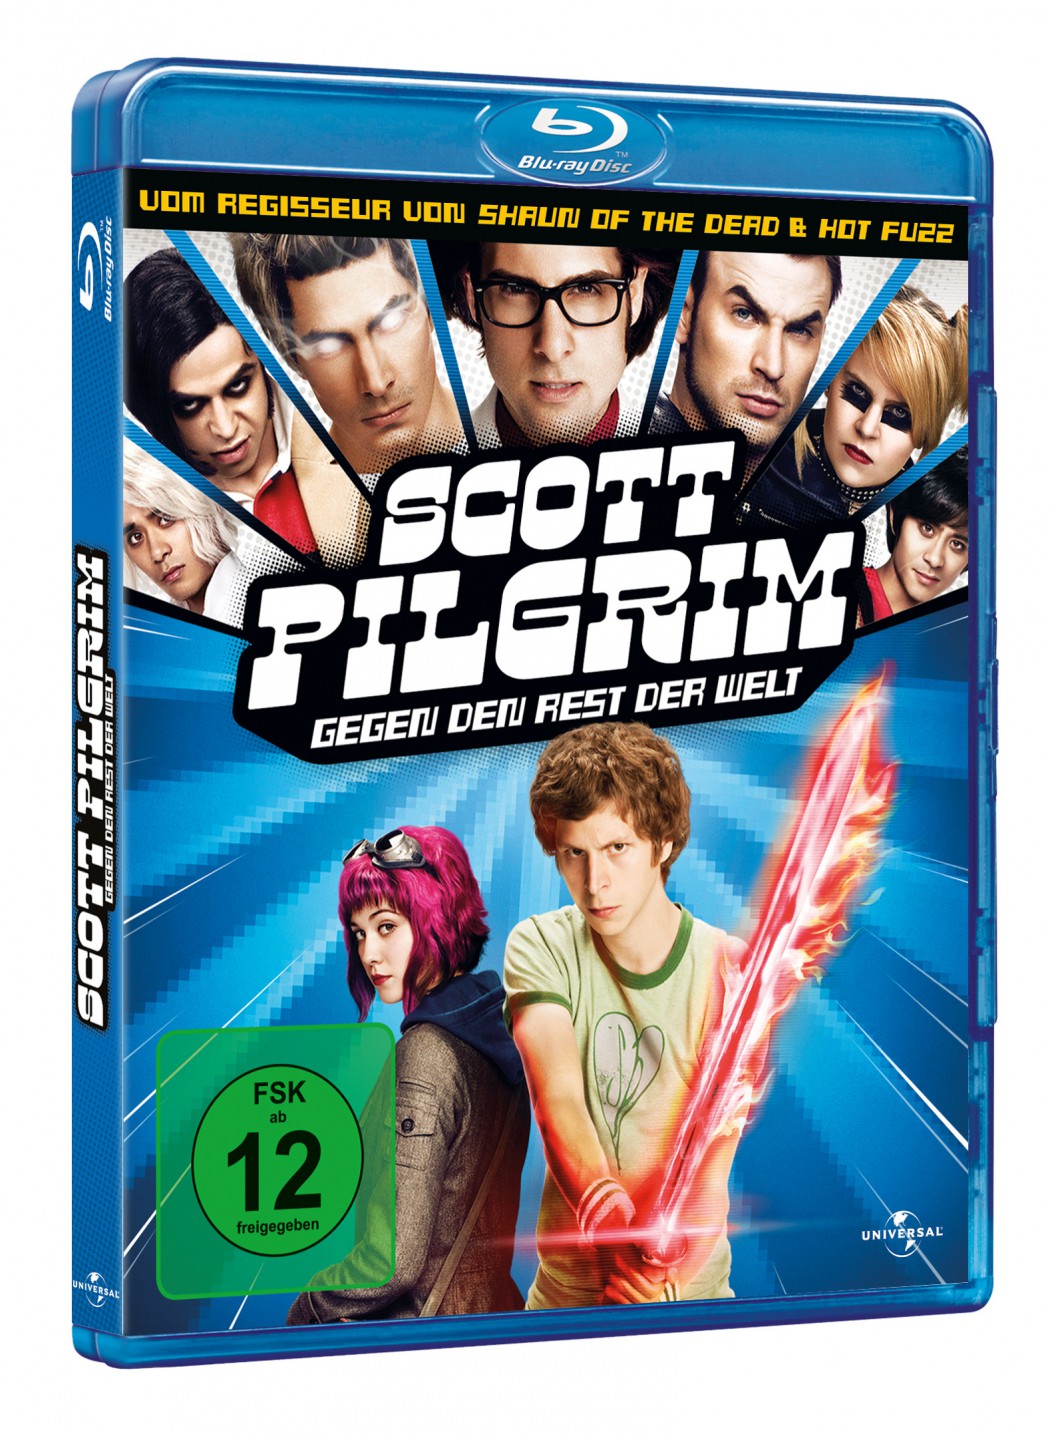 Scott Pilgrim gegen die Welt ist auf DVD und Blu-Ray im Verleih von Universal Pictures erschienen.